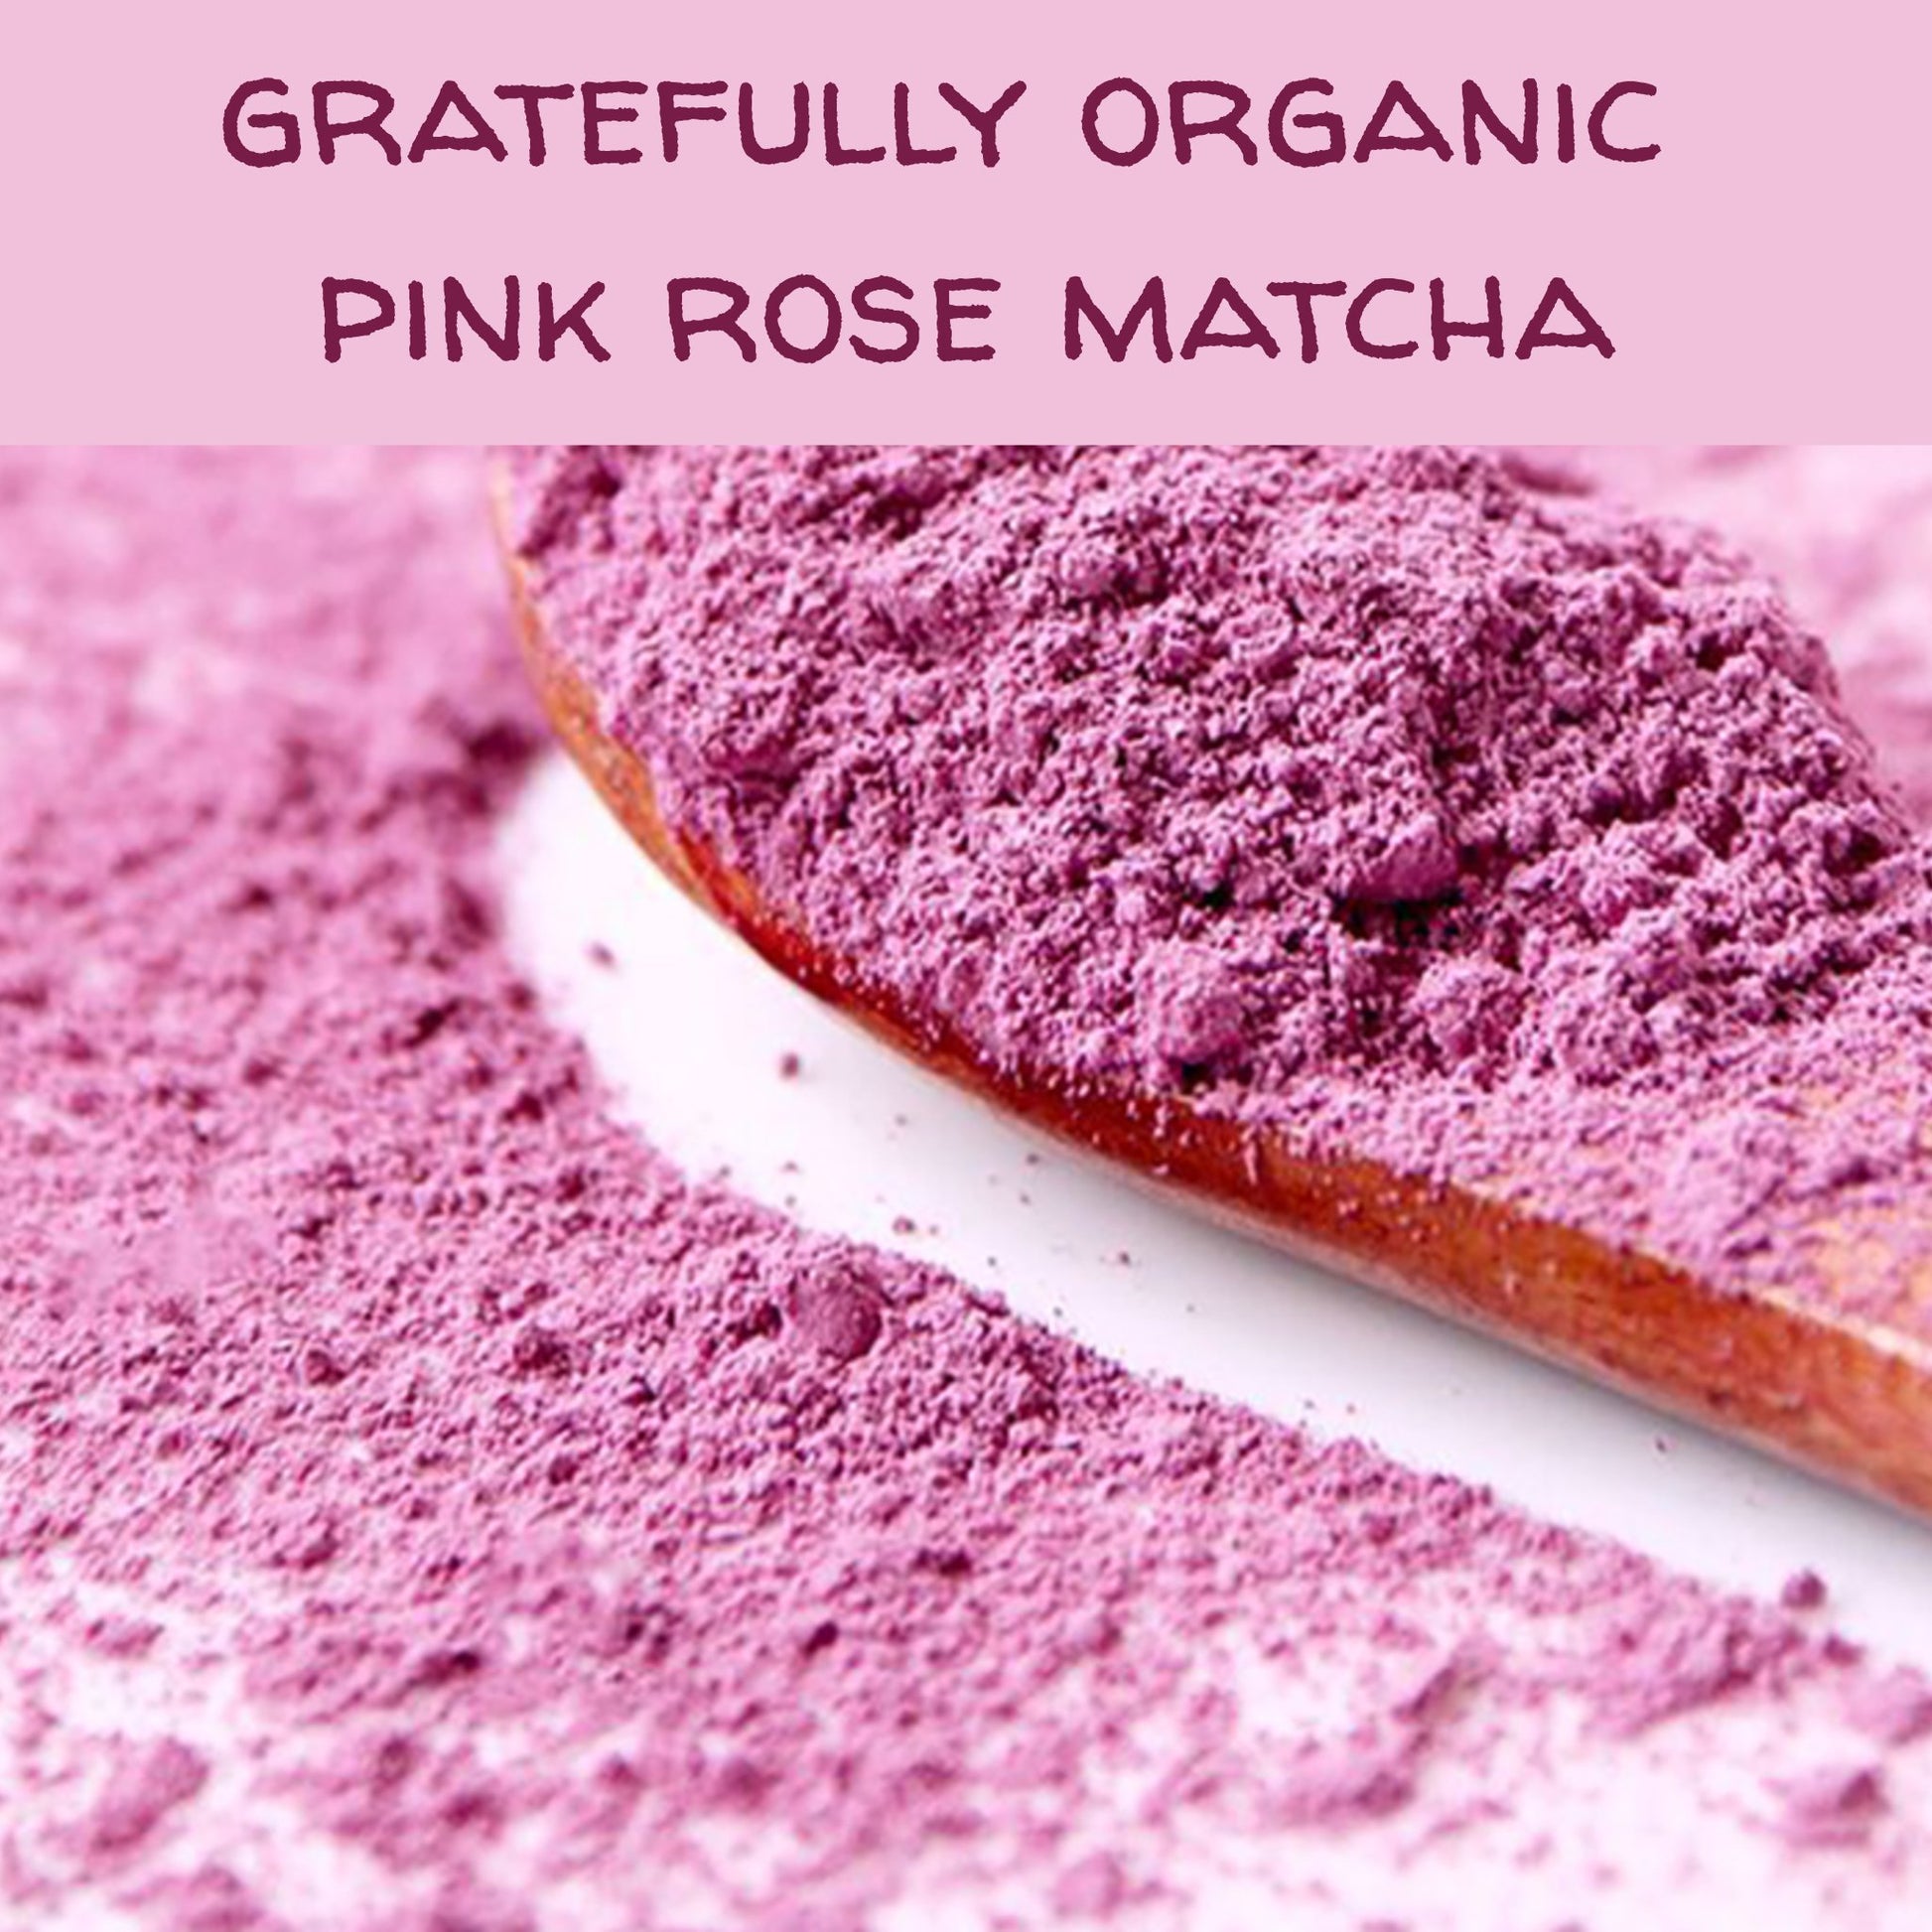 Gratefully Organic Pink Rose Petal Powder matcha The Grateful Tea Co. 